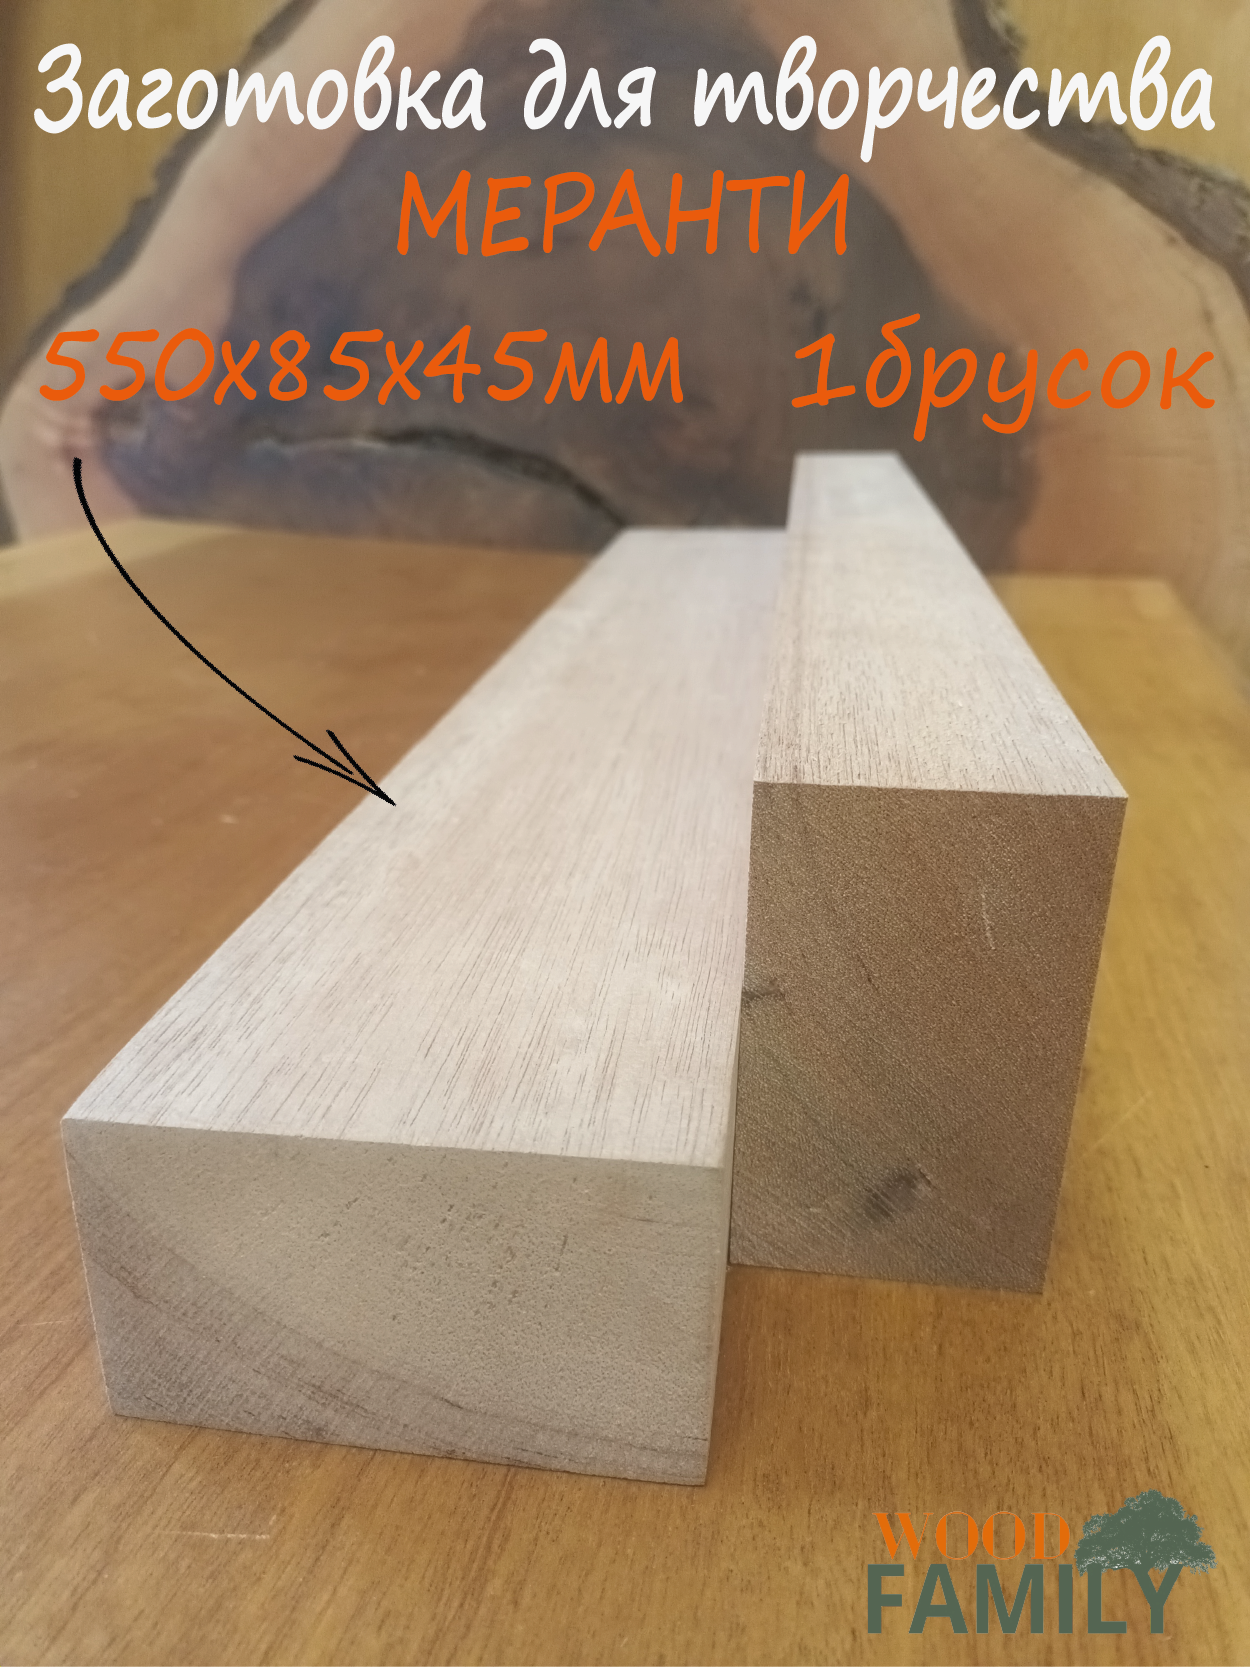 Брусок древесины меранти 45х85х550мм для резьбы по дереву , деревянная заготовка, материал для моделирования